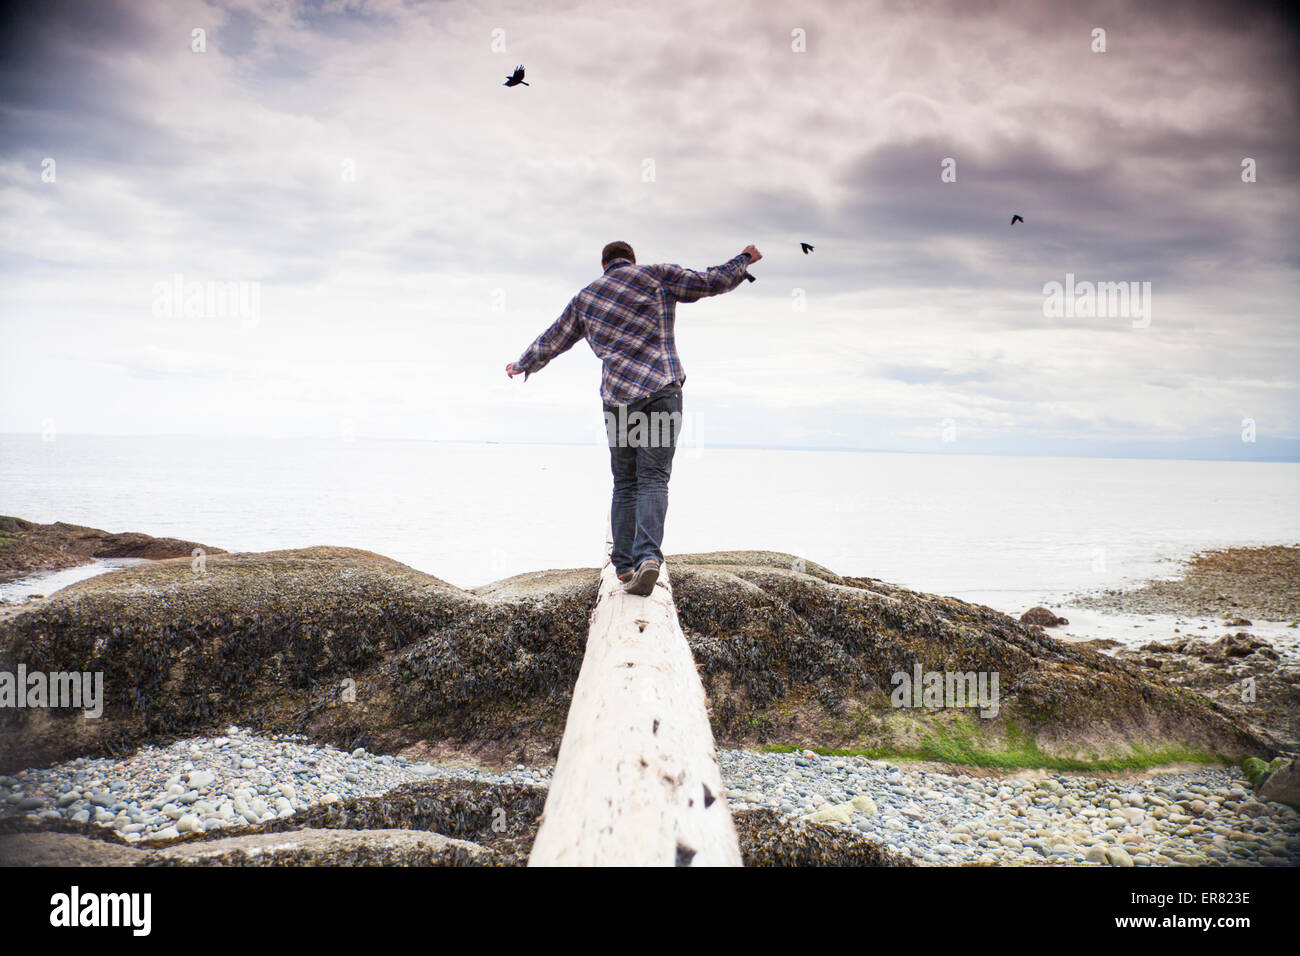 Un jeune homme en équilibre sur un journal face à l'océan Pacifique. Banque D'Images